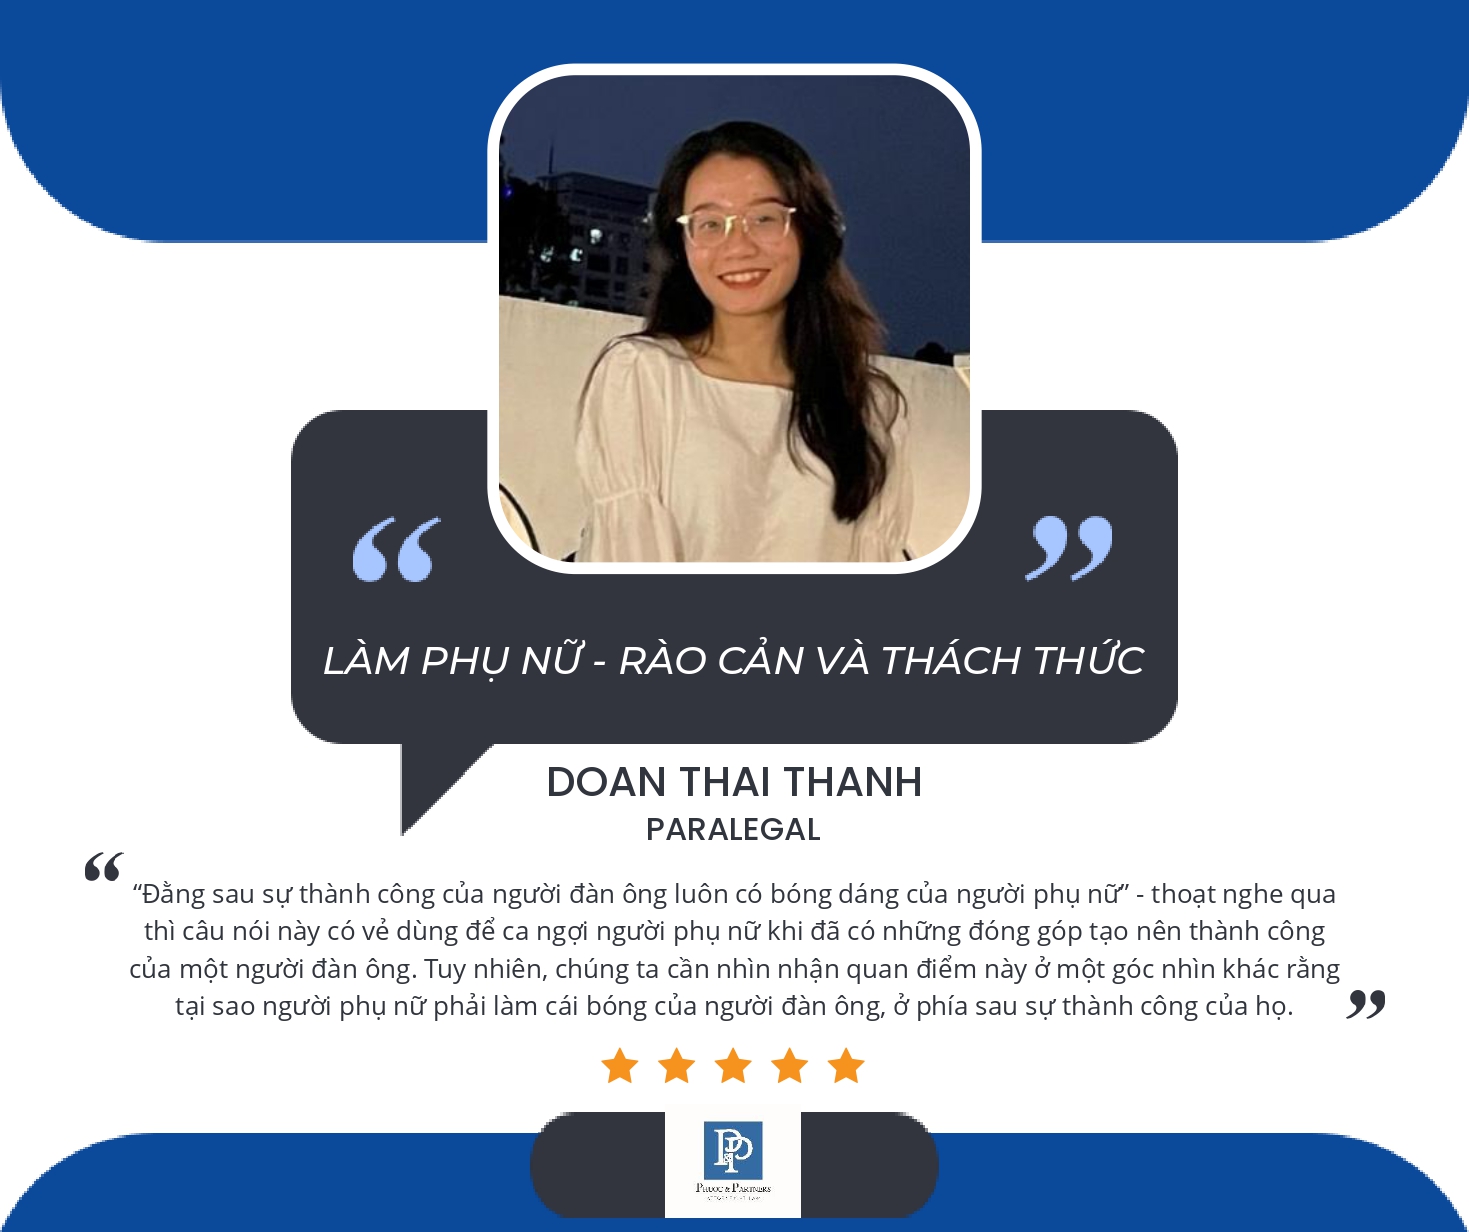 Doan Thai Thanh_Lam phu nu - Rao can va thach thuc